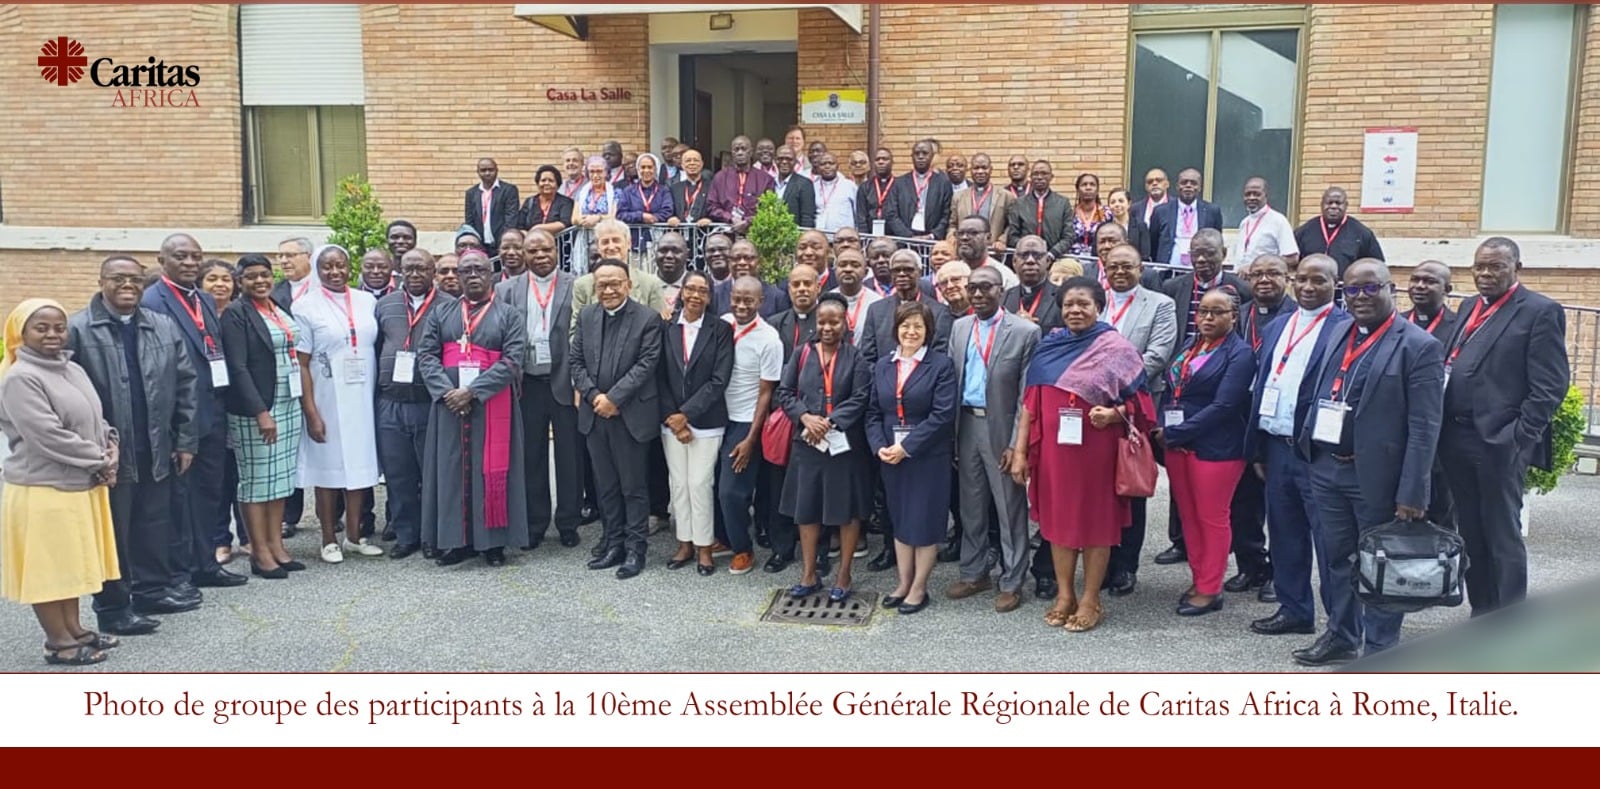 Lire la suite à propos de l’article Début des travaux de la 10ème Assemblée Générale Régionale de Caritas Africa à Rome, Italie.